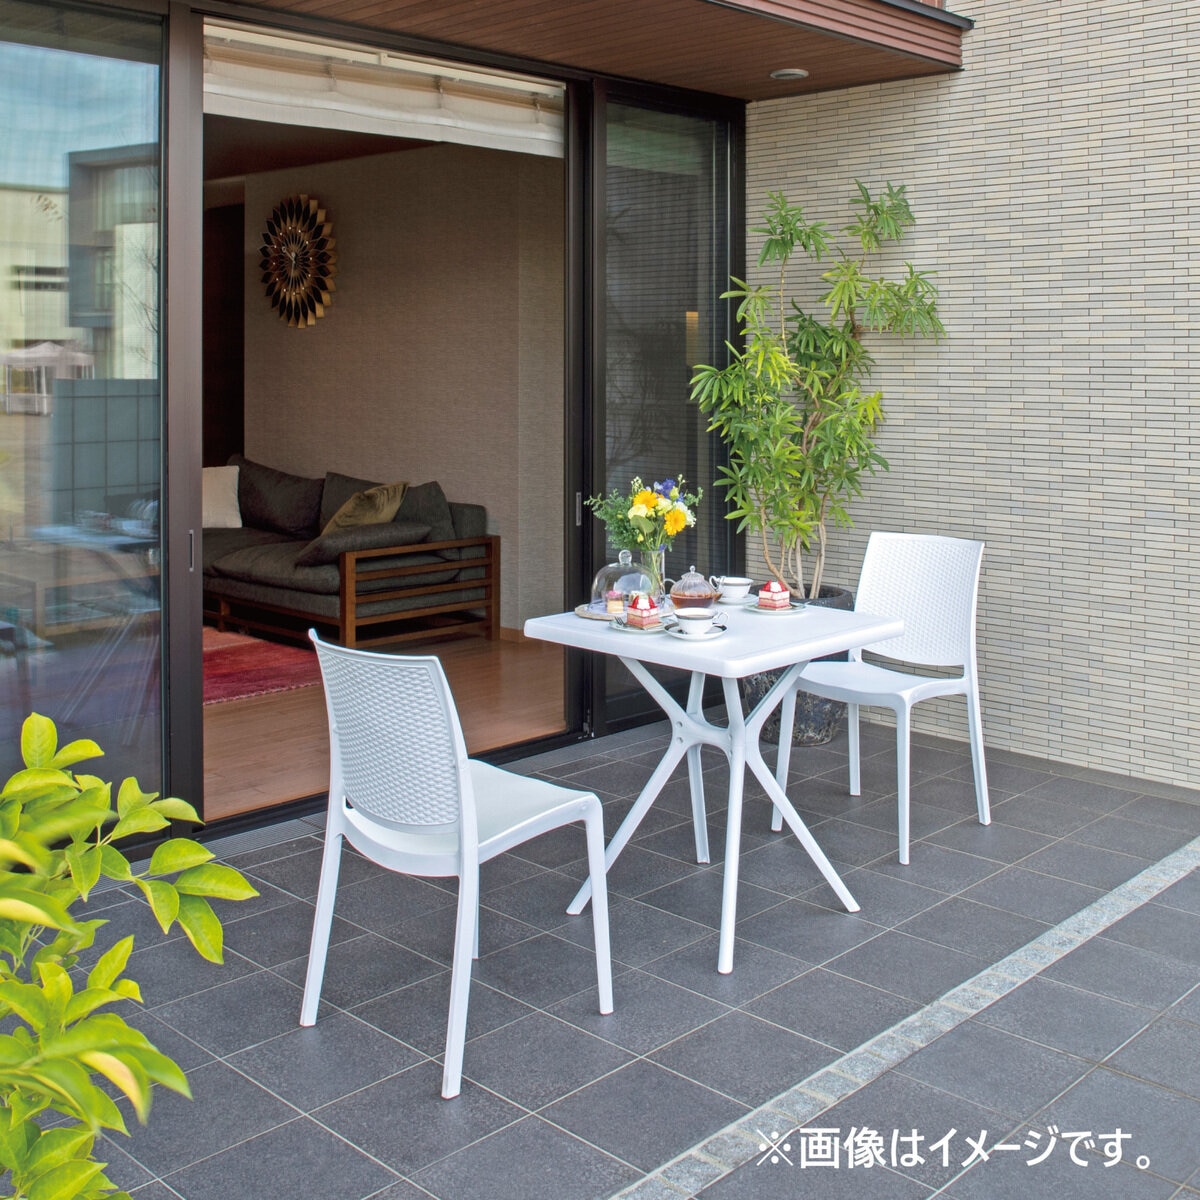 タカショー ガーデン スクエアテーブル ホワイト (ビアンカ) | Costco Japan